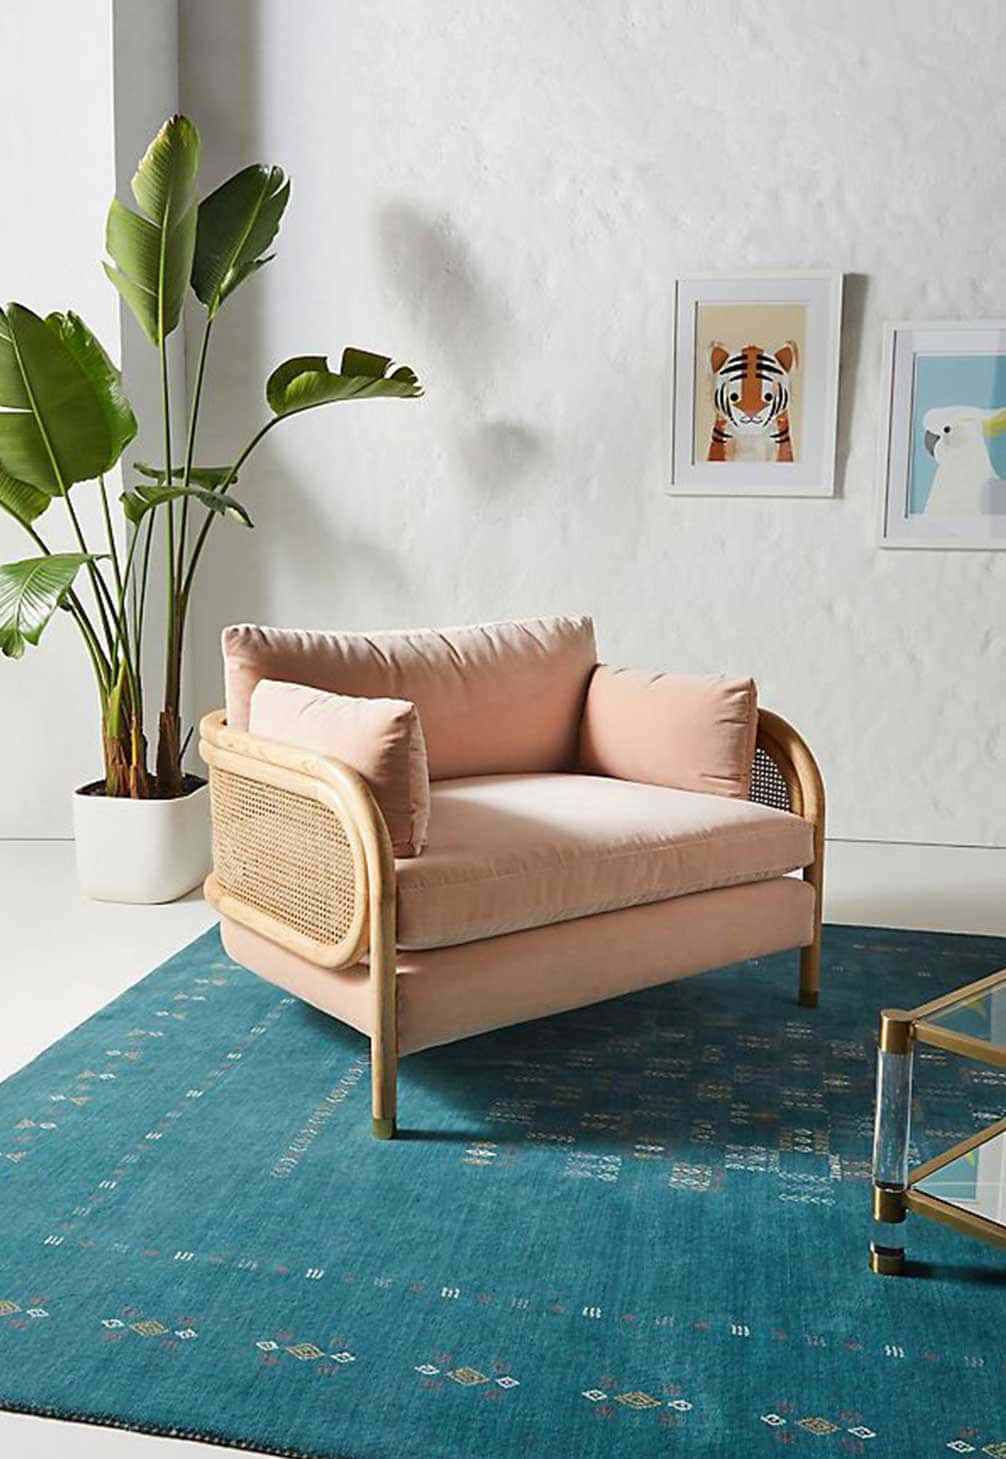 Idée de fauteuil rose en cannage dans salon cosy - Decorazine.fr